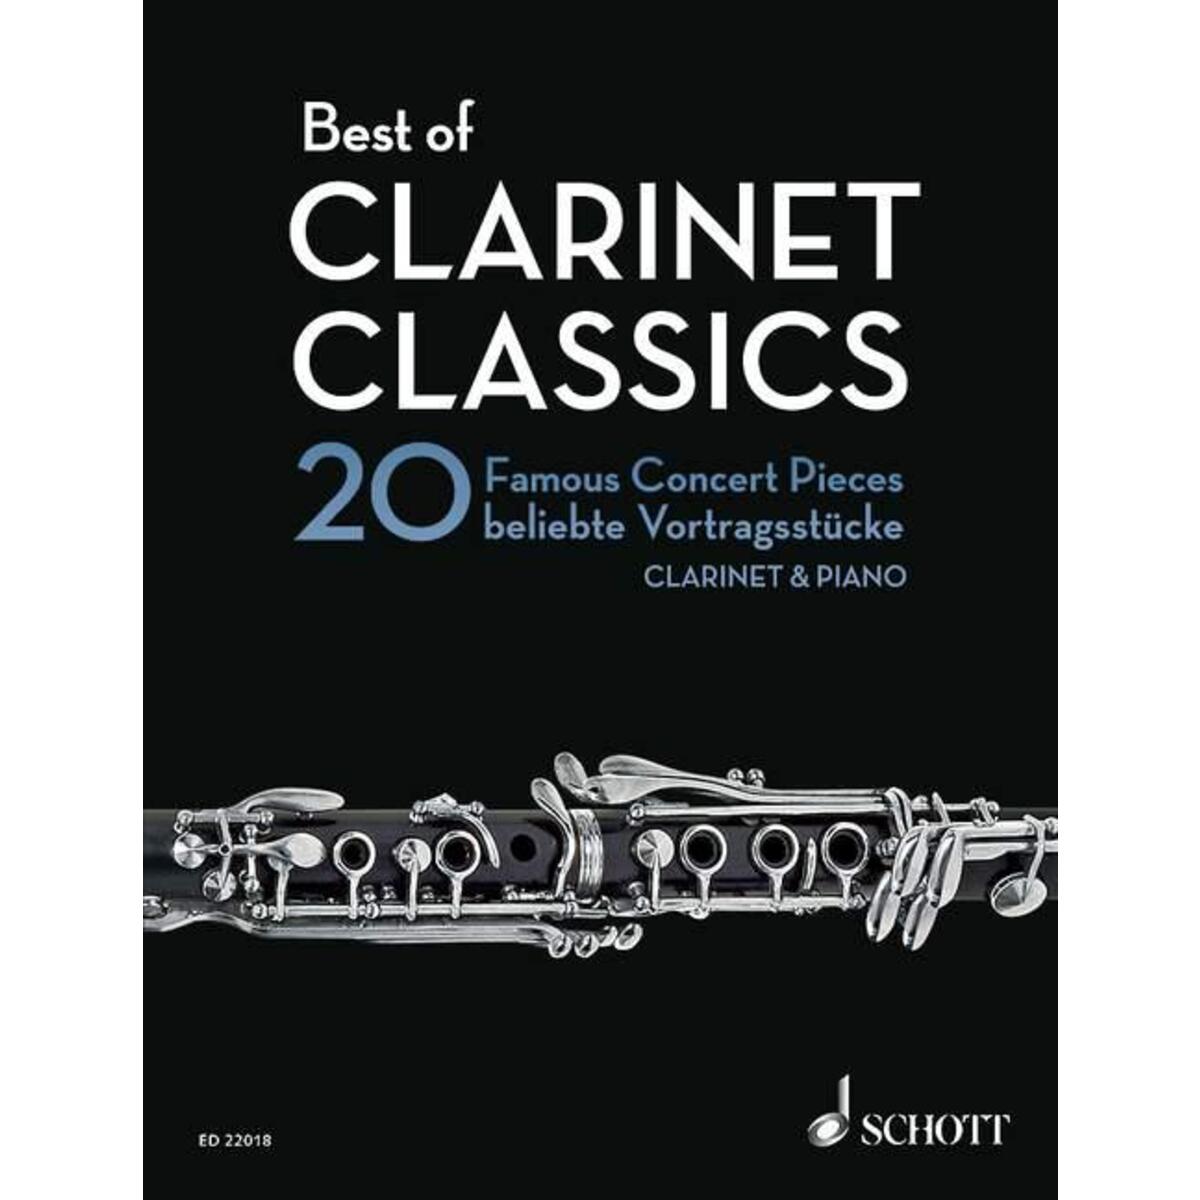 Best of Clarinet Classics von Schott Music